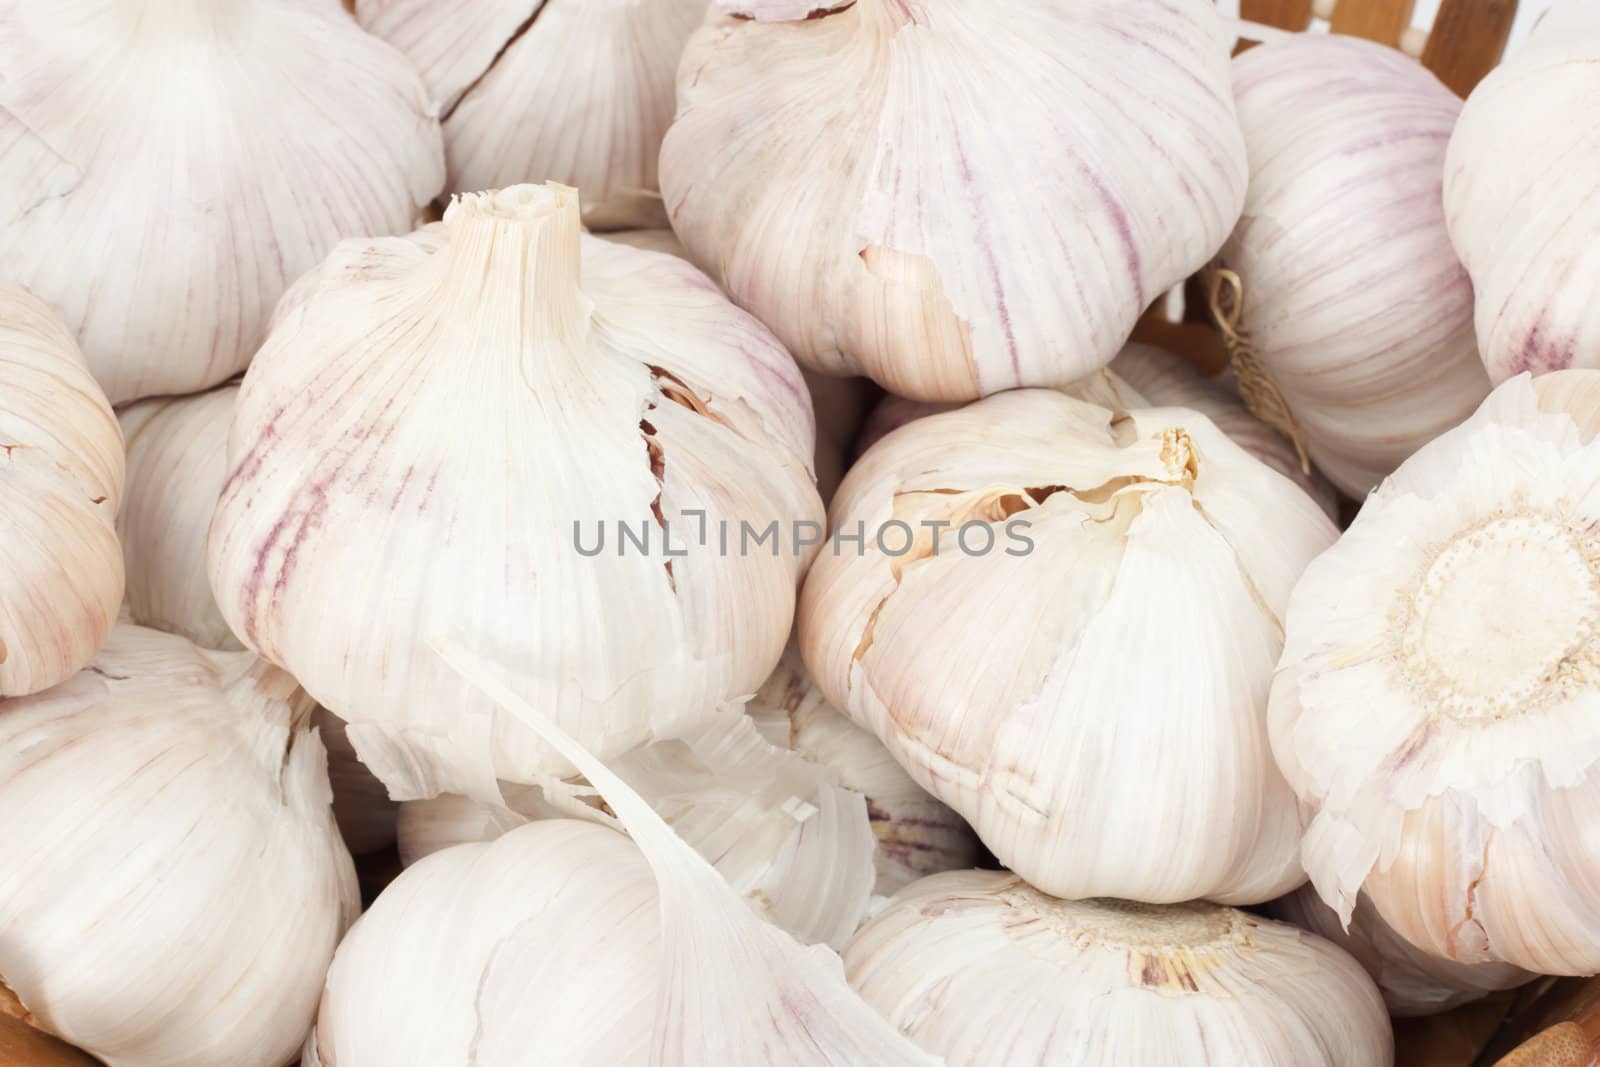 garlic as a background by schankz